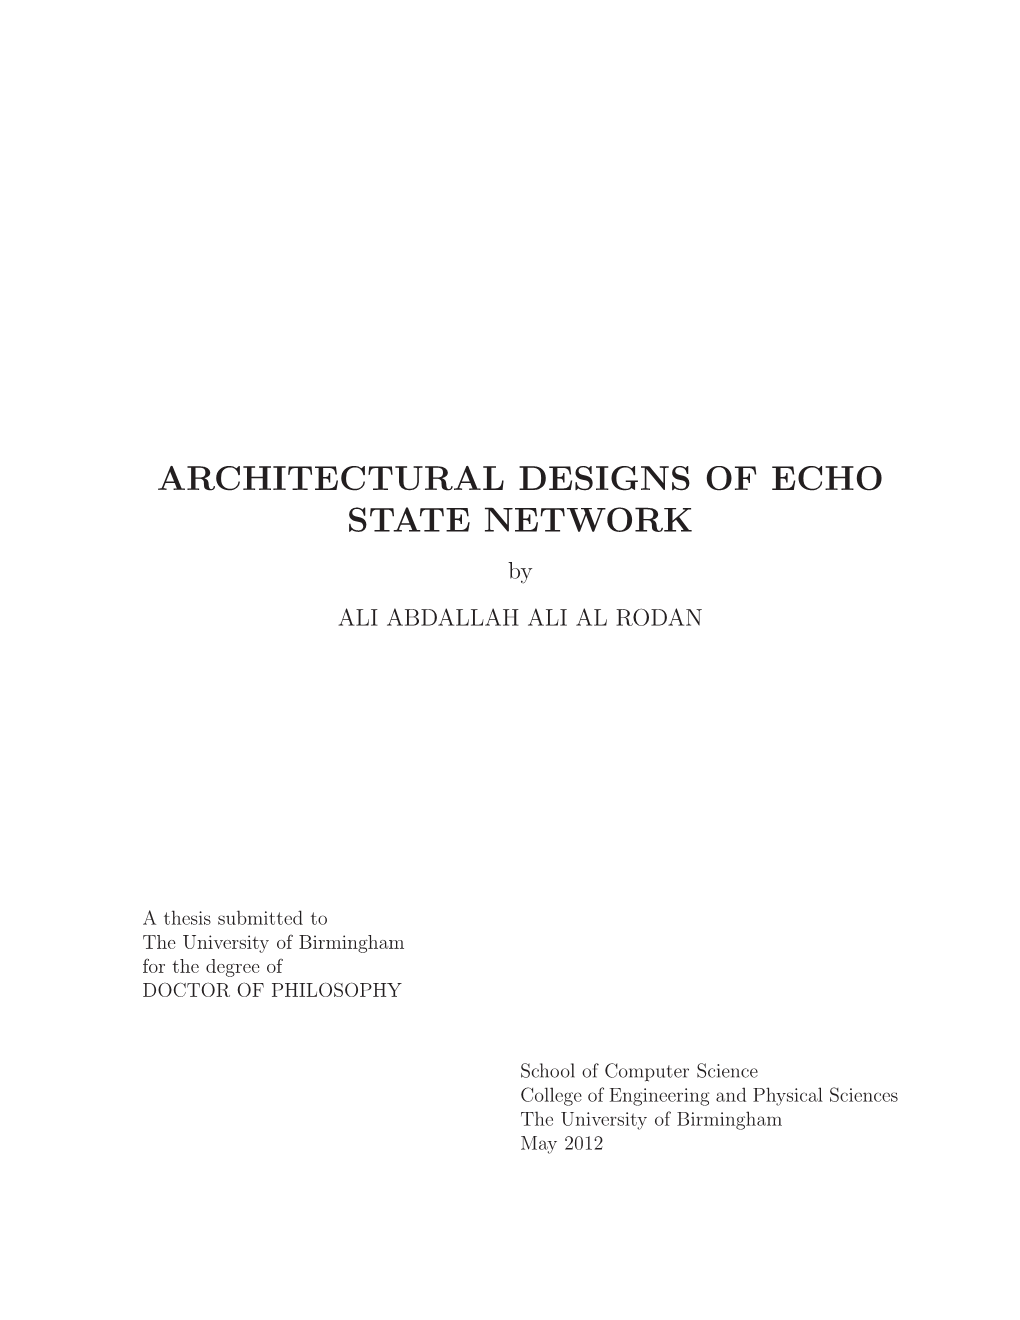 ARCHITECTURAL DESIGNS of ECHO STATE NETWORK by ALI ABDALLAH ALI AL RODAN